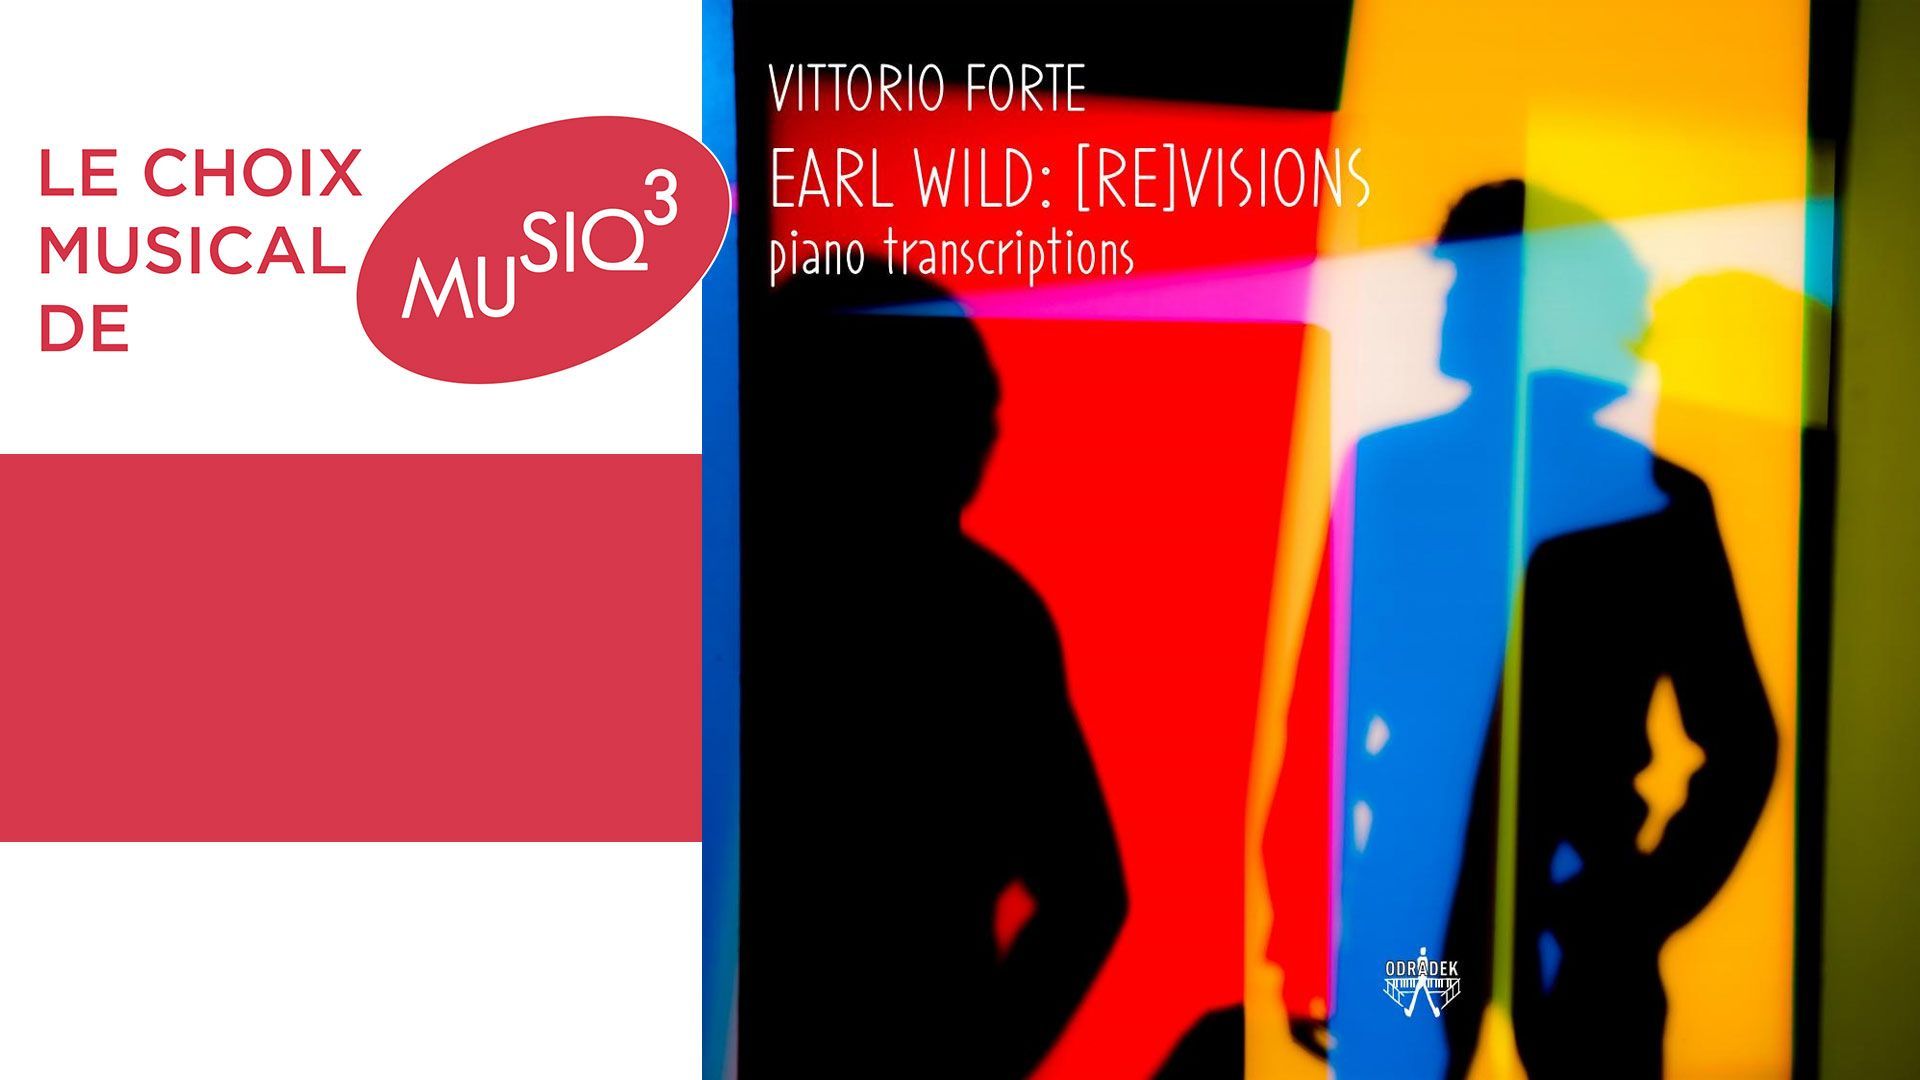 Vittorio Forte fait revivre la figure légendaire du pianiste américain Earl Wild